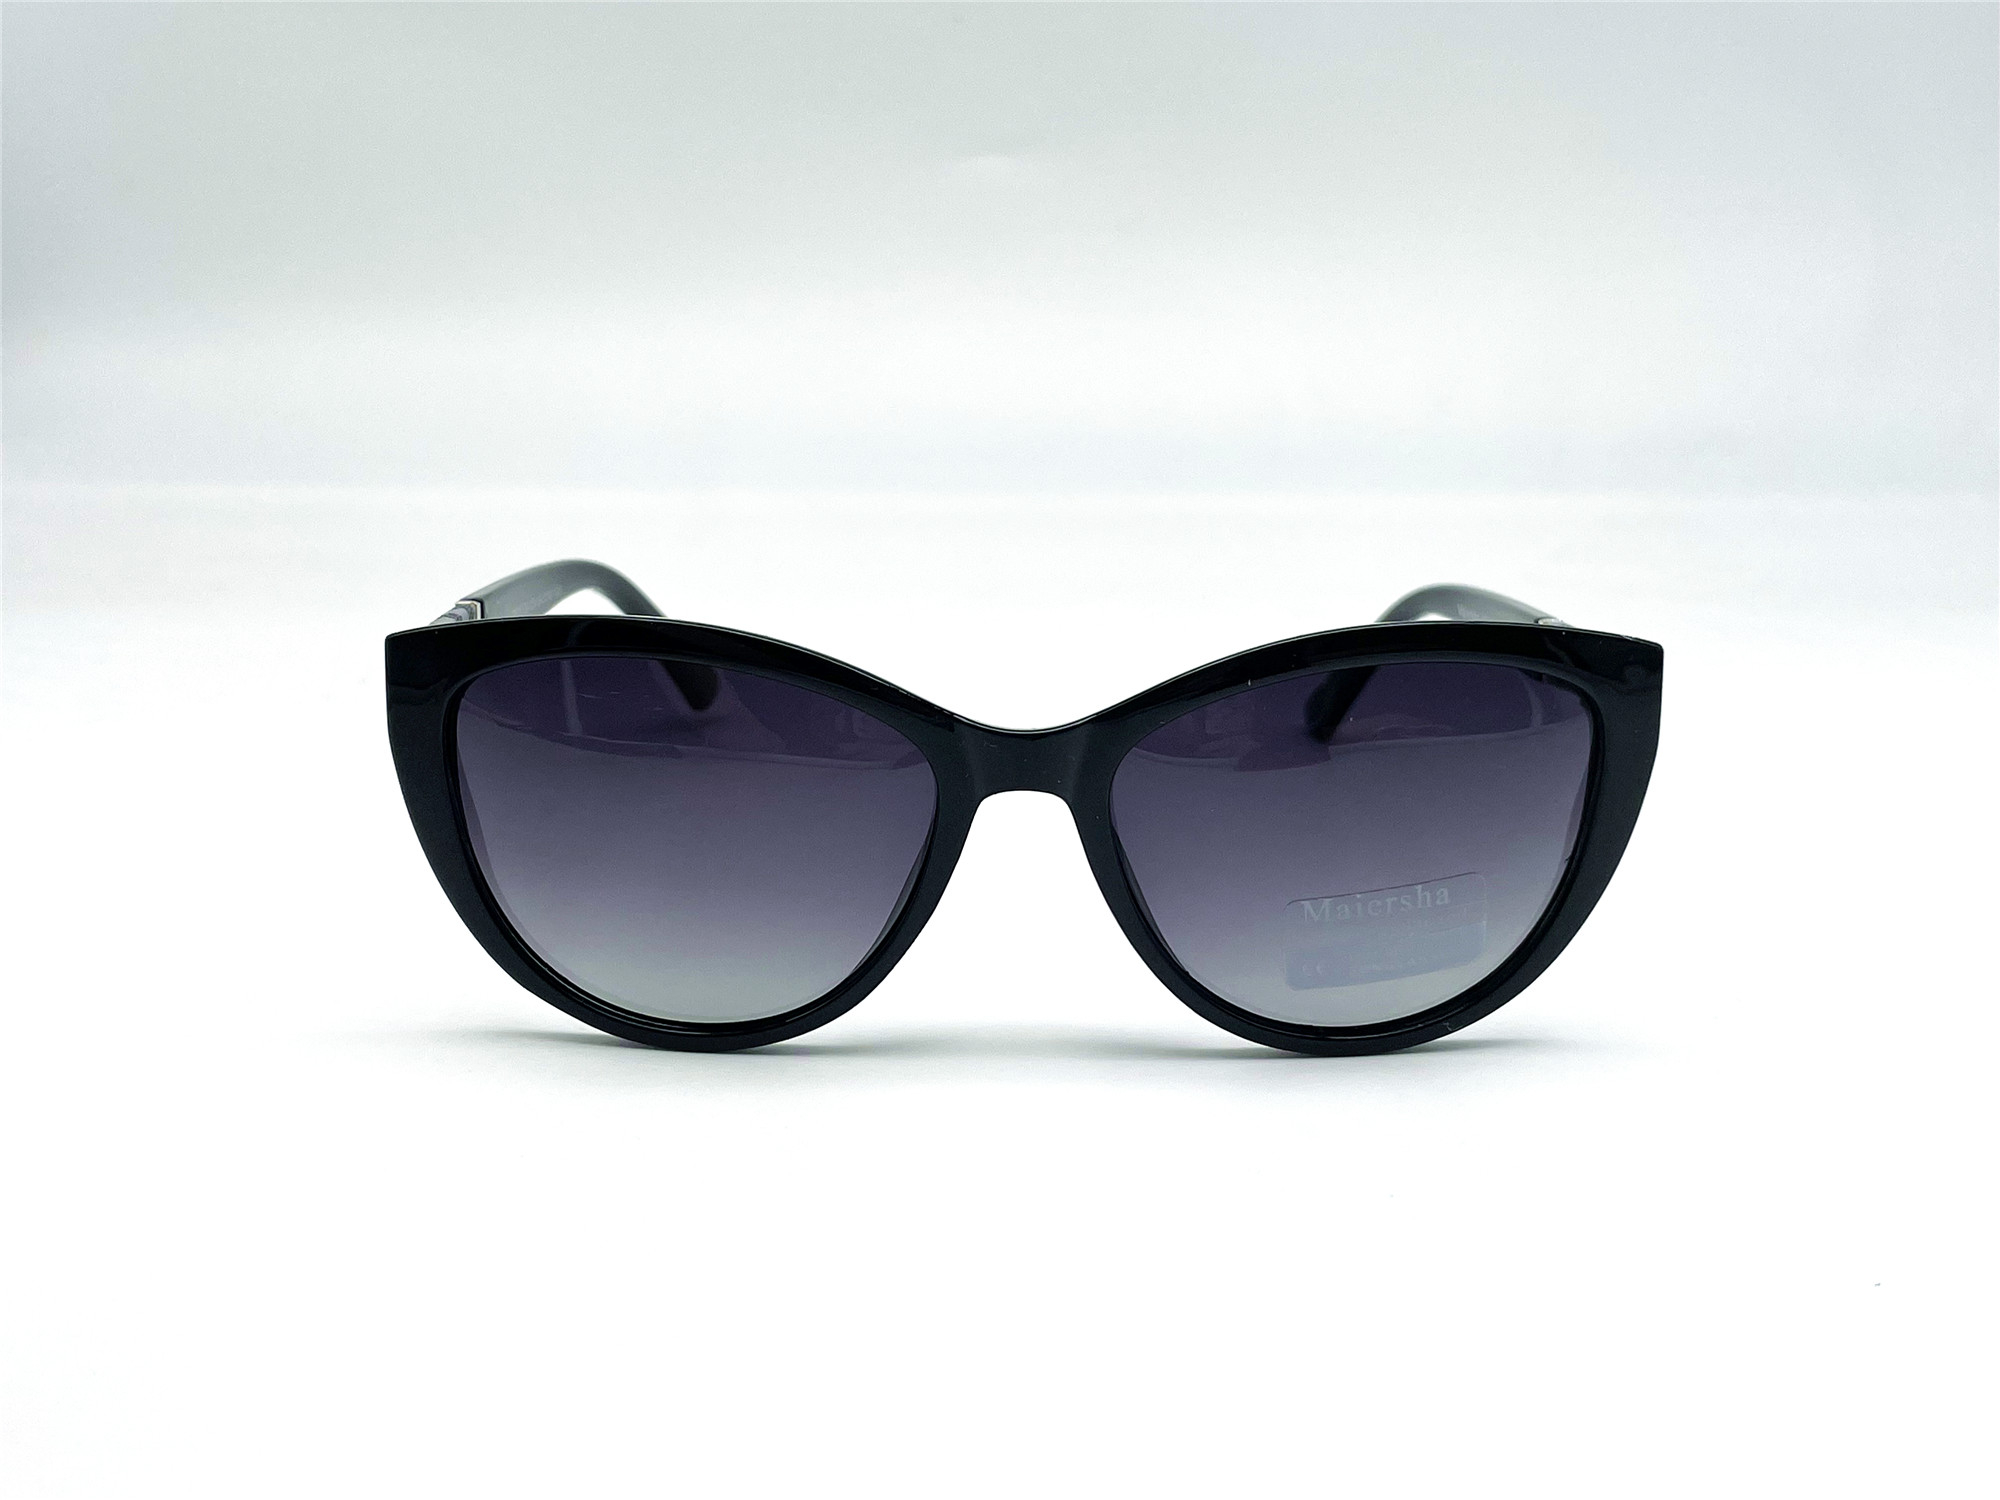  Солнцезащитные очки картинка Женские Maiersha Polarized Круглые 03806-C9-124 